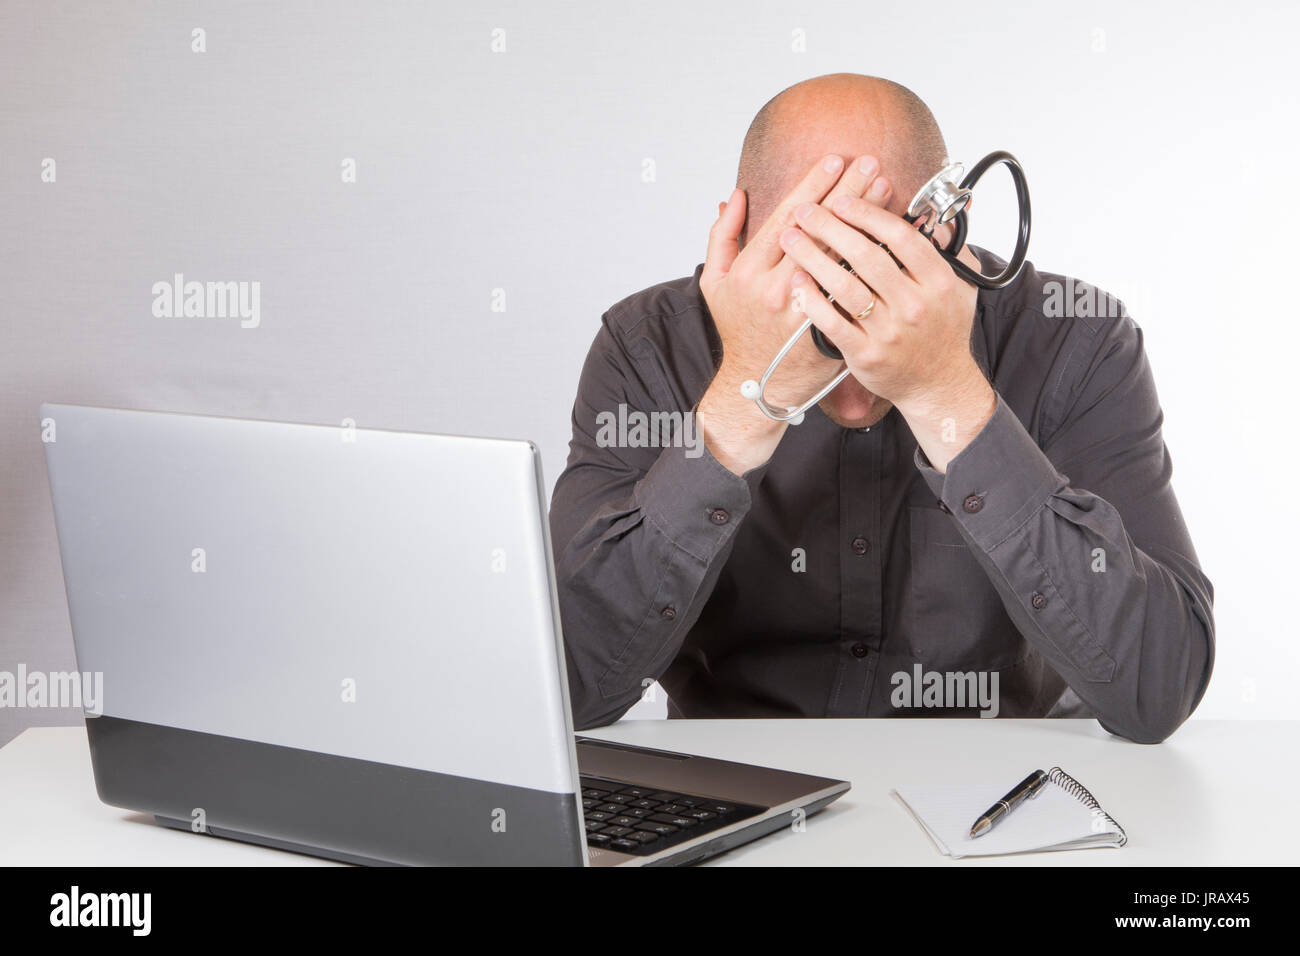 Verzweifelt oder der Arzt seinen Kopf in seine Hände erschöpft, wie er sitzt an seinem Schreibtisch arbeiten auf einem Laptop. Stockfoto